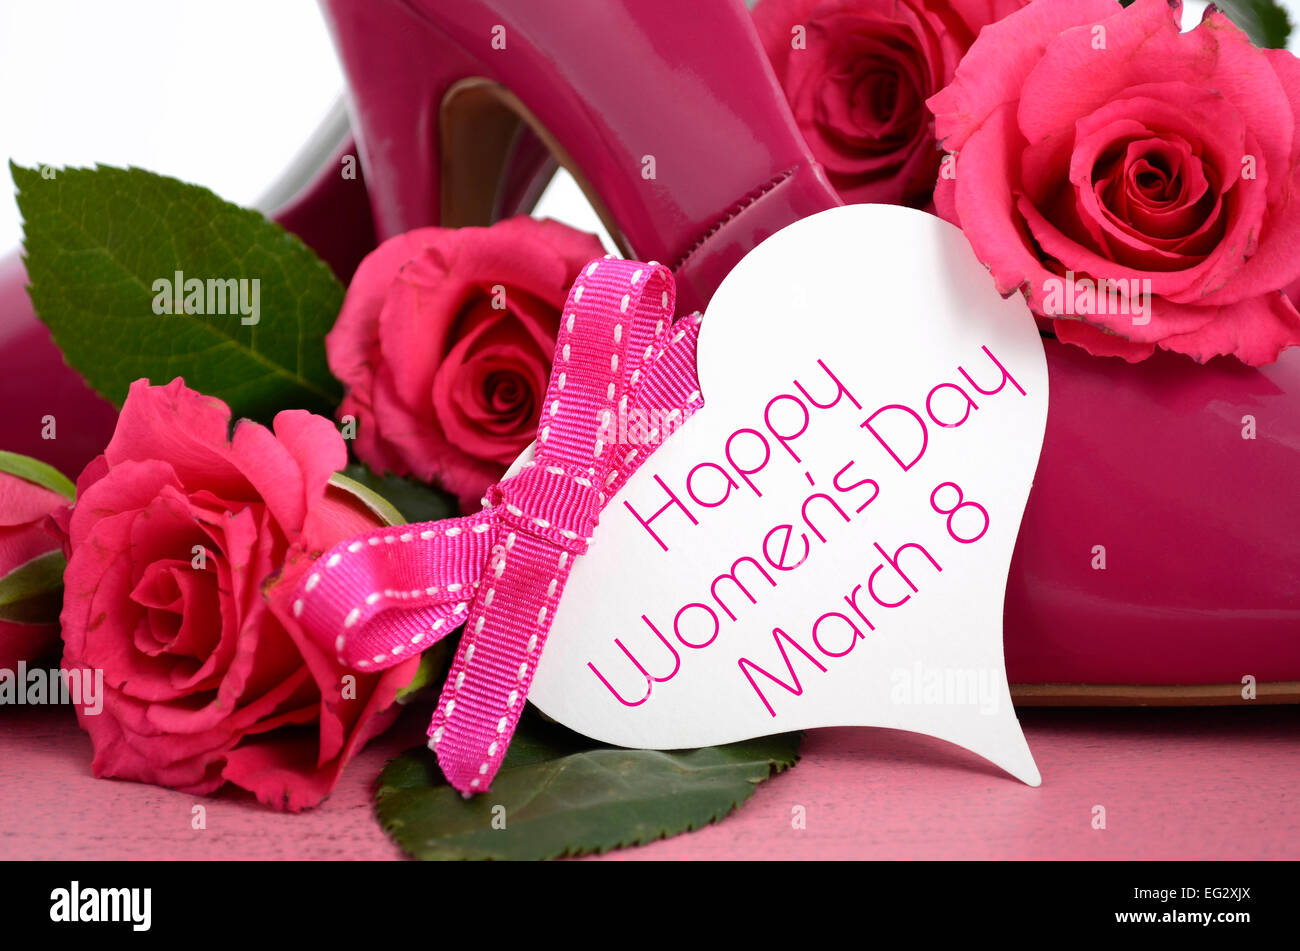 La Journée internationale des femmes, le 8 mars, dames rose talon haut stiletto chaussures et roses sur fond de bois rose vintage. Banque D'Images